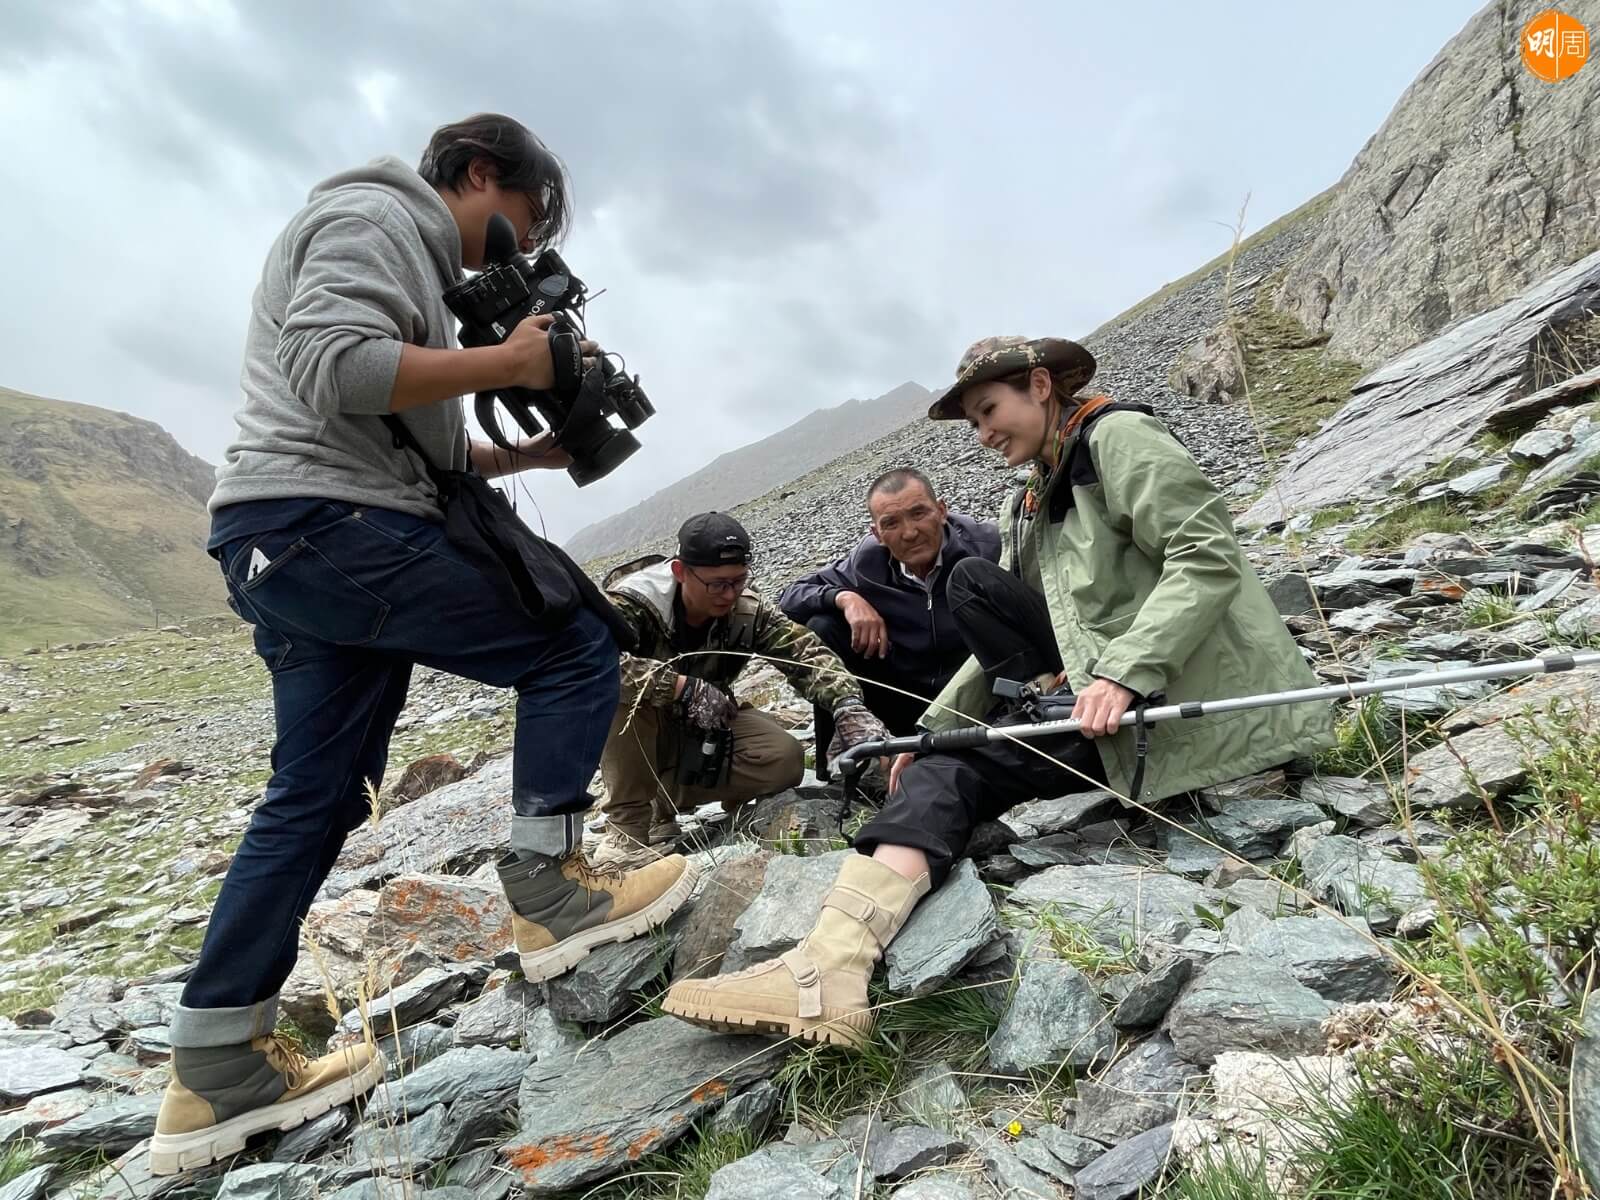 Janis登山期間還訪問了志願隊隊員，了解他們為何願意為了雪豹無私付出。